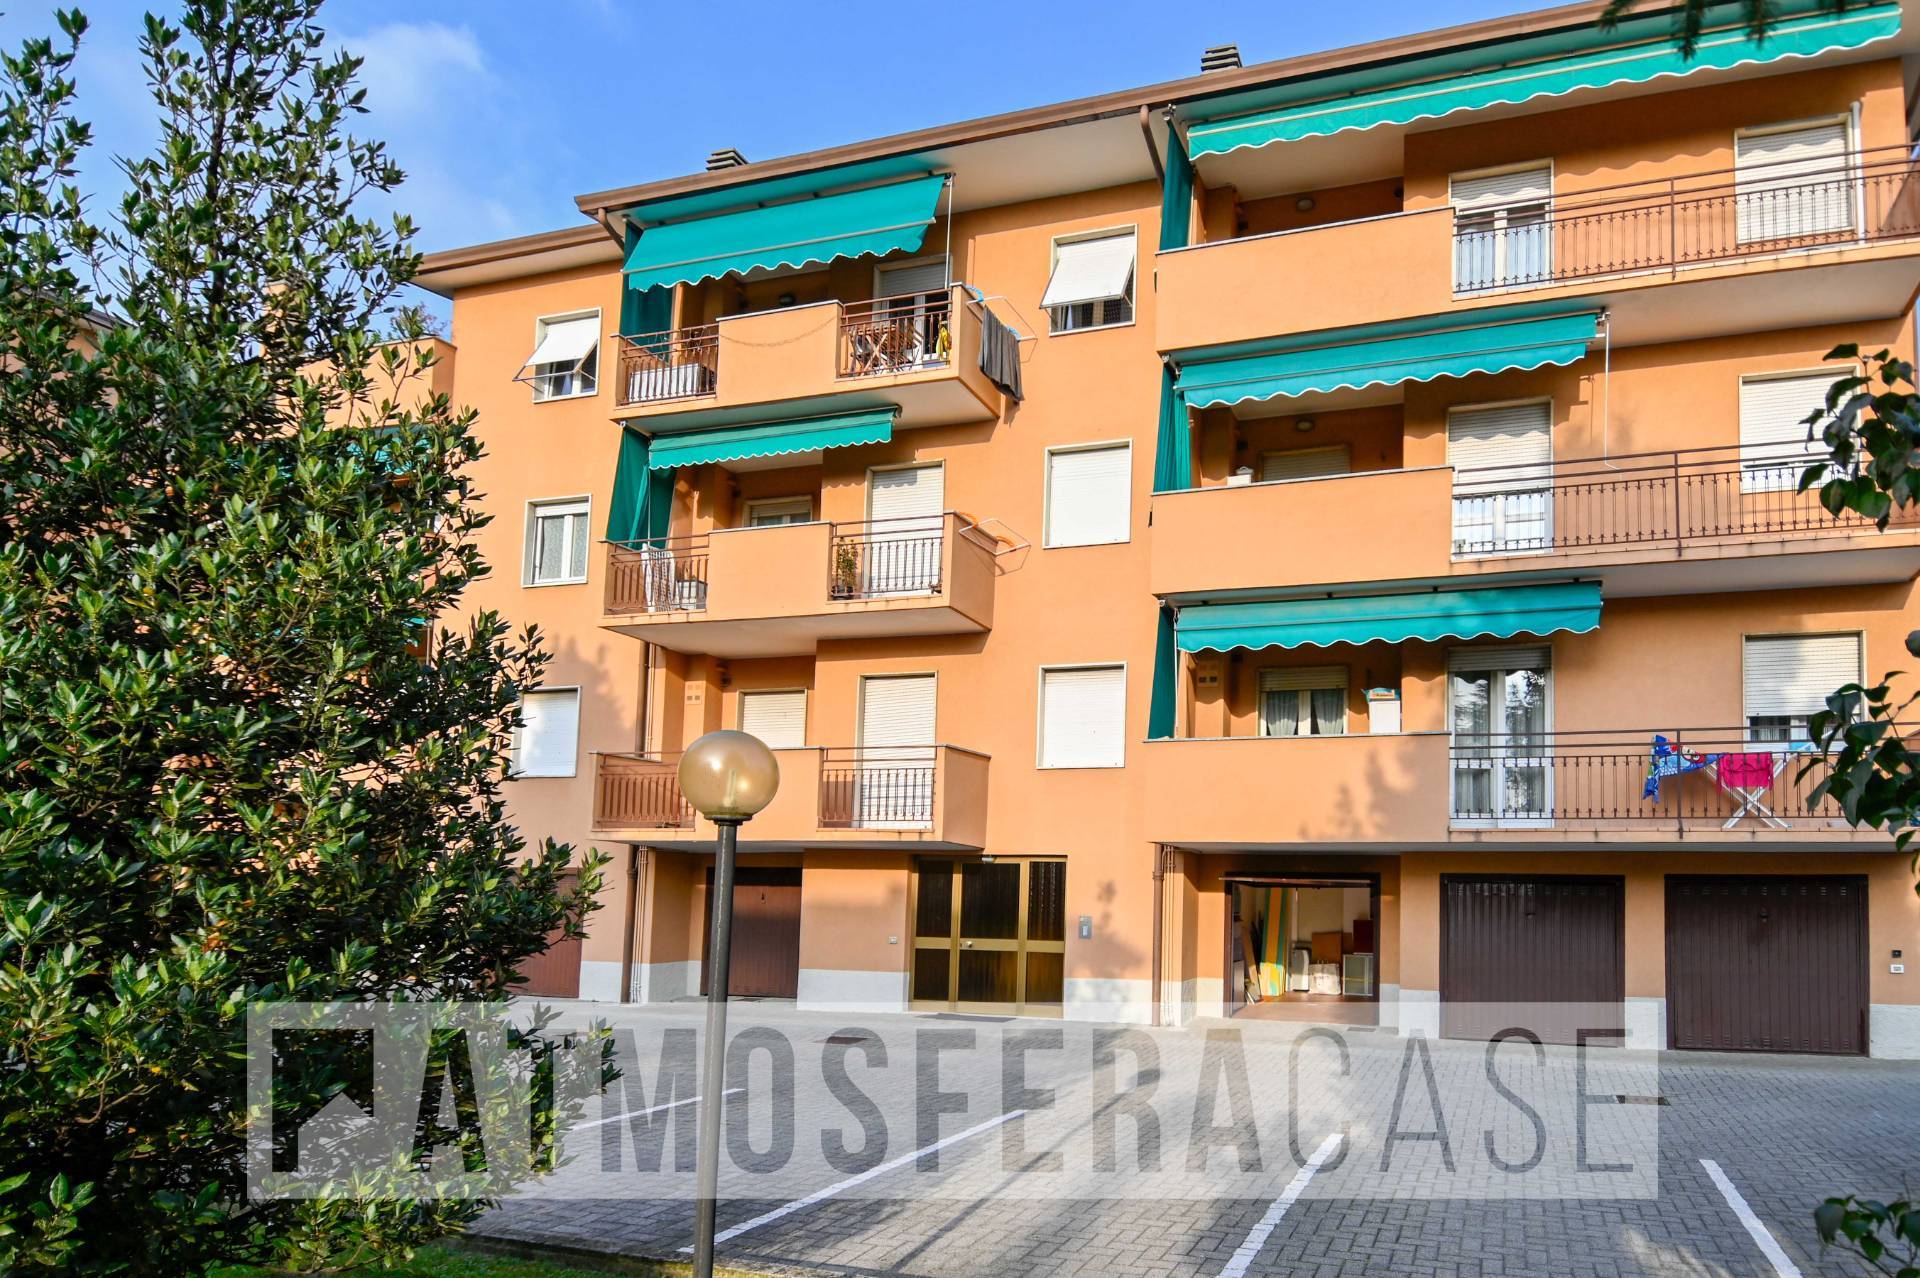 Appartamento in vendita a Nembro, 4 locali, prezzo € 190.000 | PortaleAgenzieImmobiliari.it